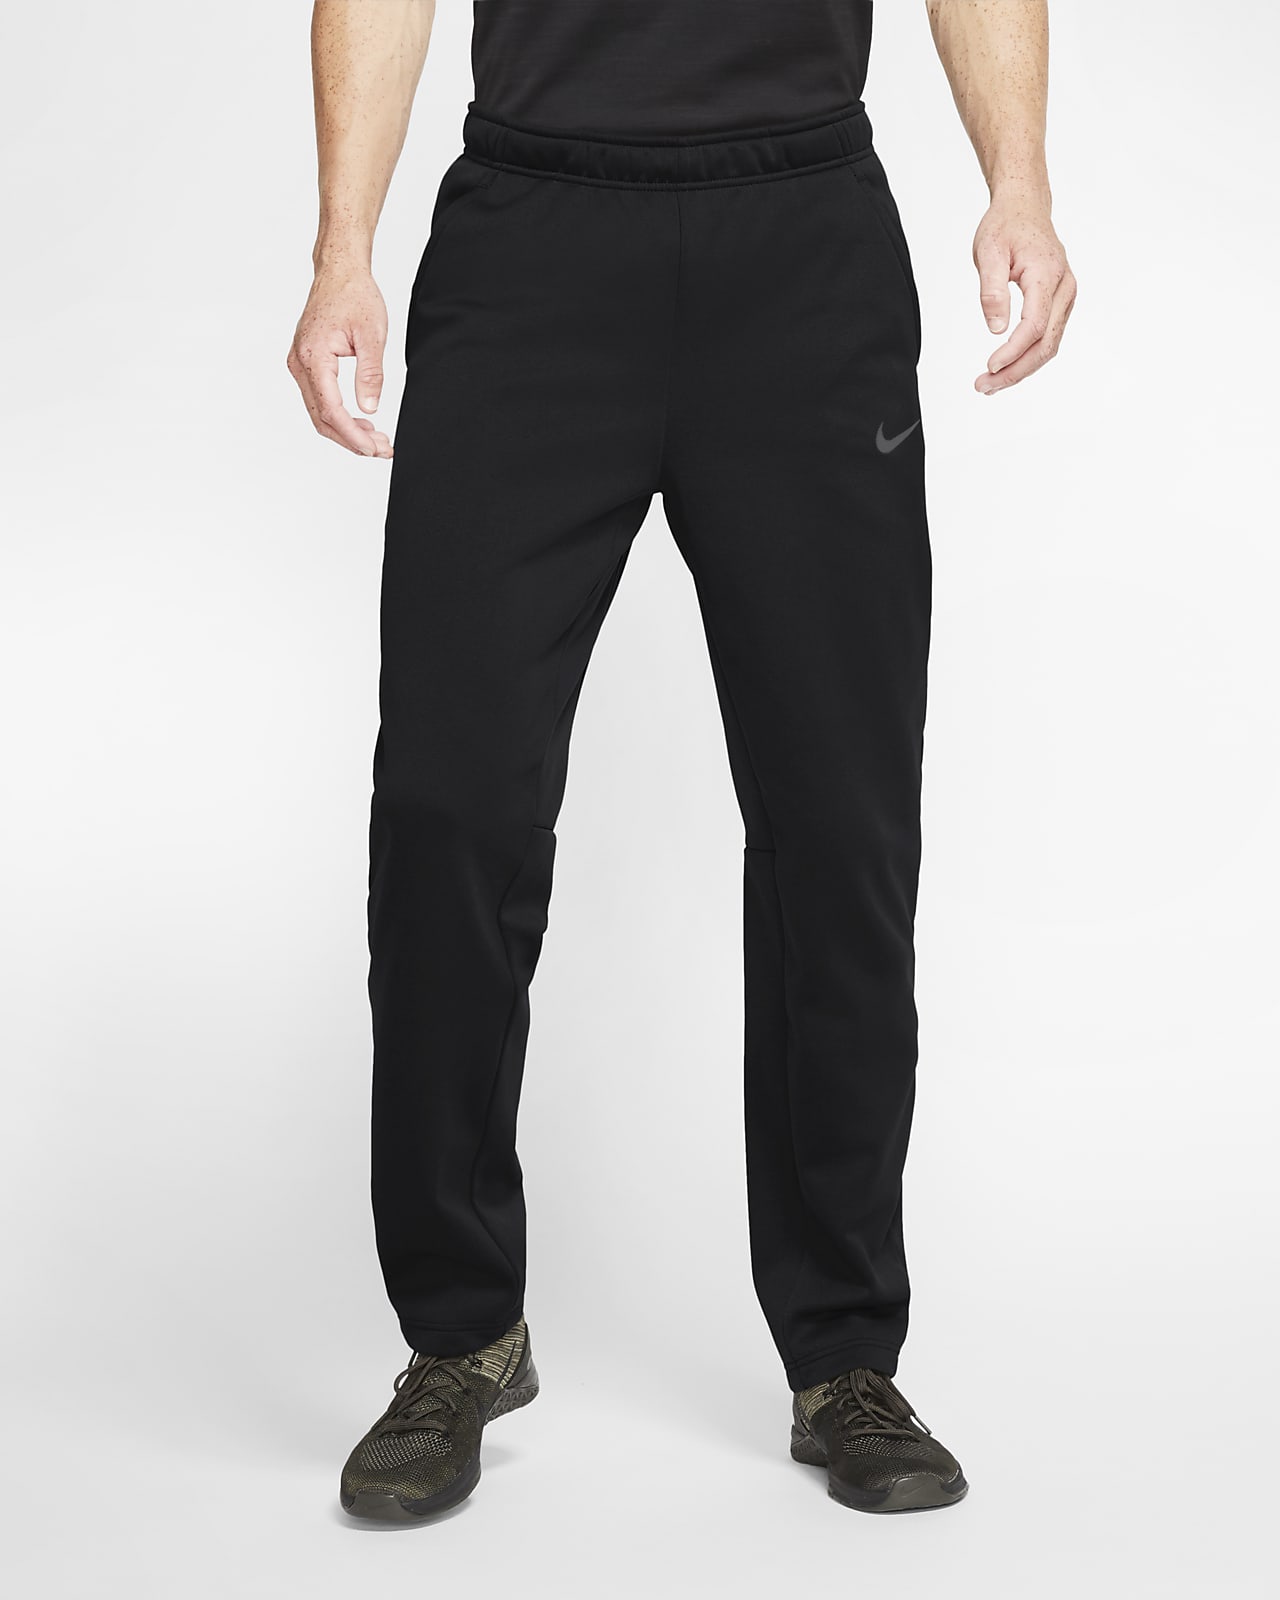 Nike Therma Men's Training Pants. Nike.com